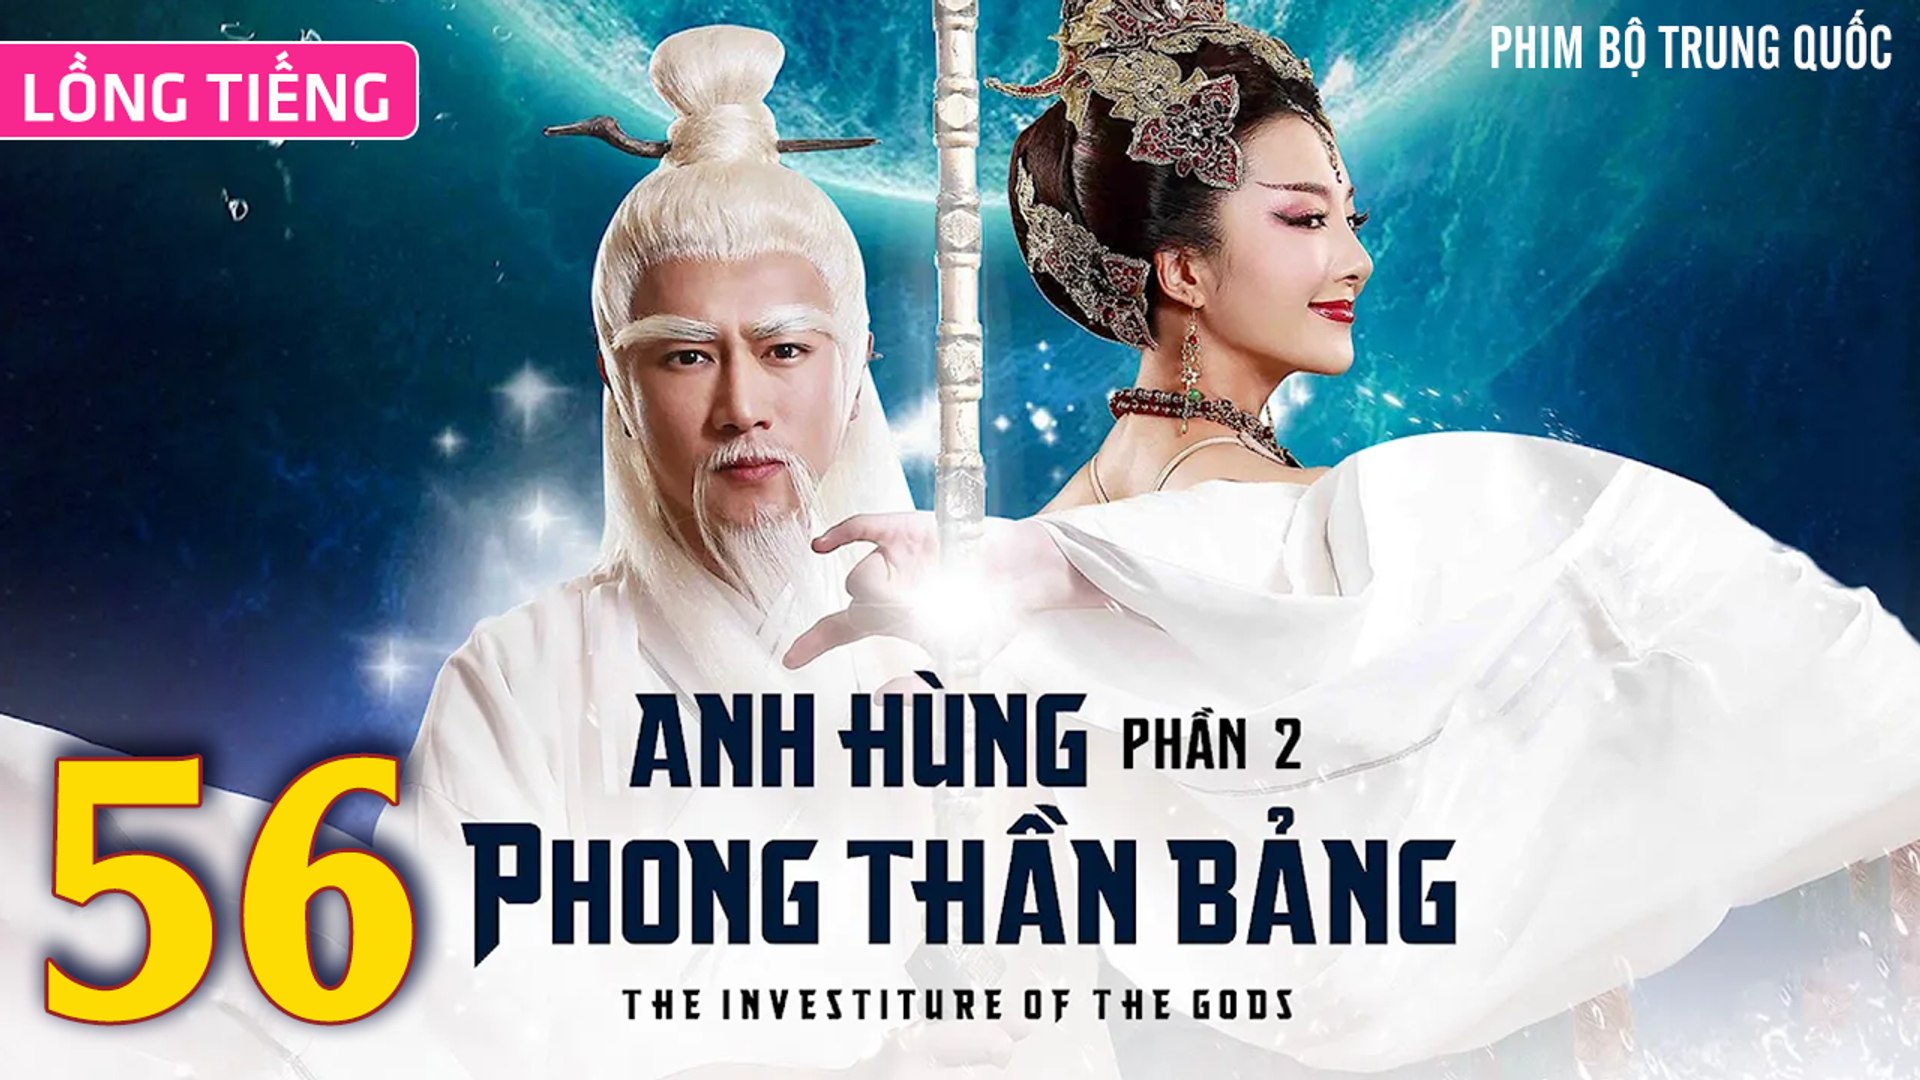 ⁣Phim Bộ Hay: ANH HÙNG PHONG THẦN BẢNG 2 - Tập 56 (Lồng Tiếng) | Phim Bộ Trung Quốc Hay Nhất 2023